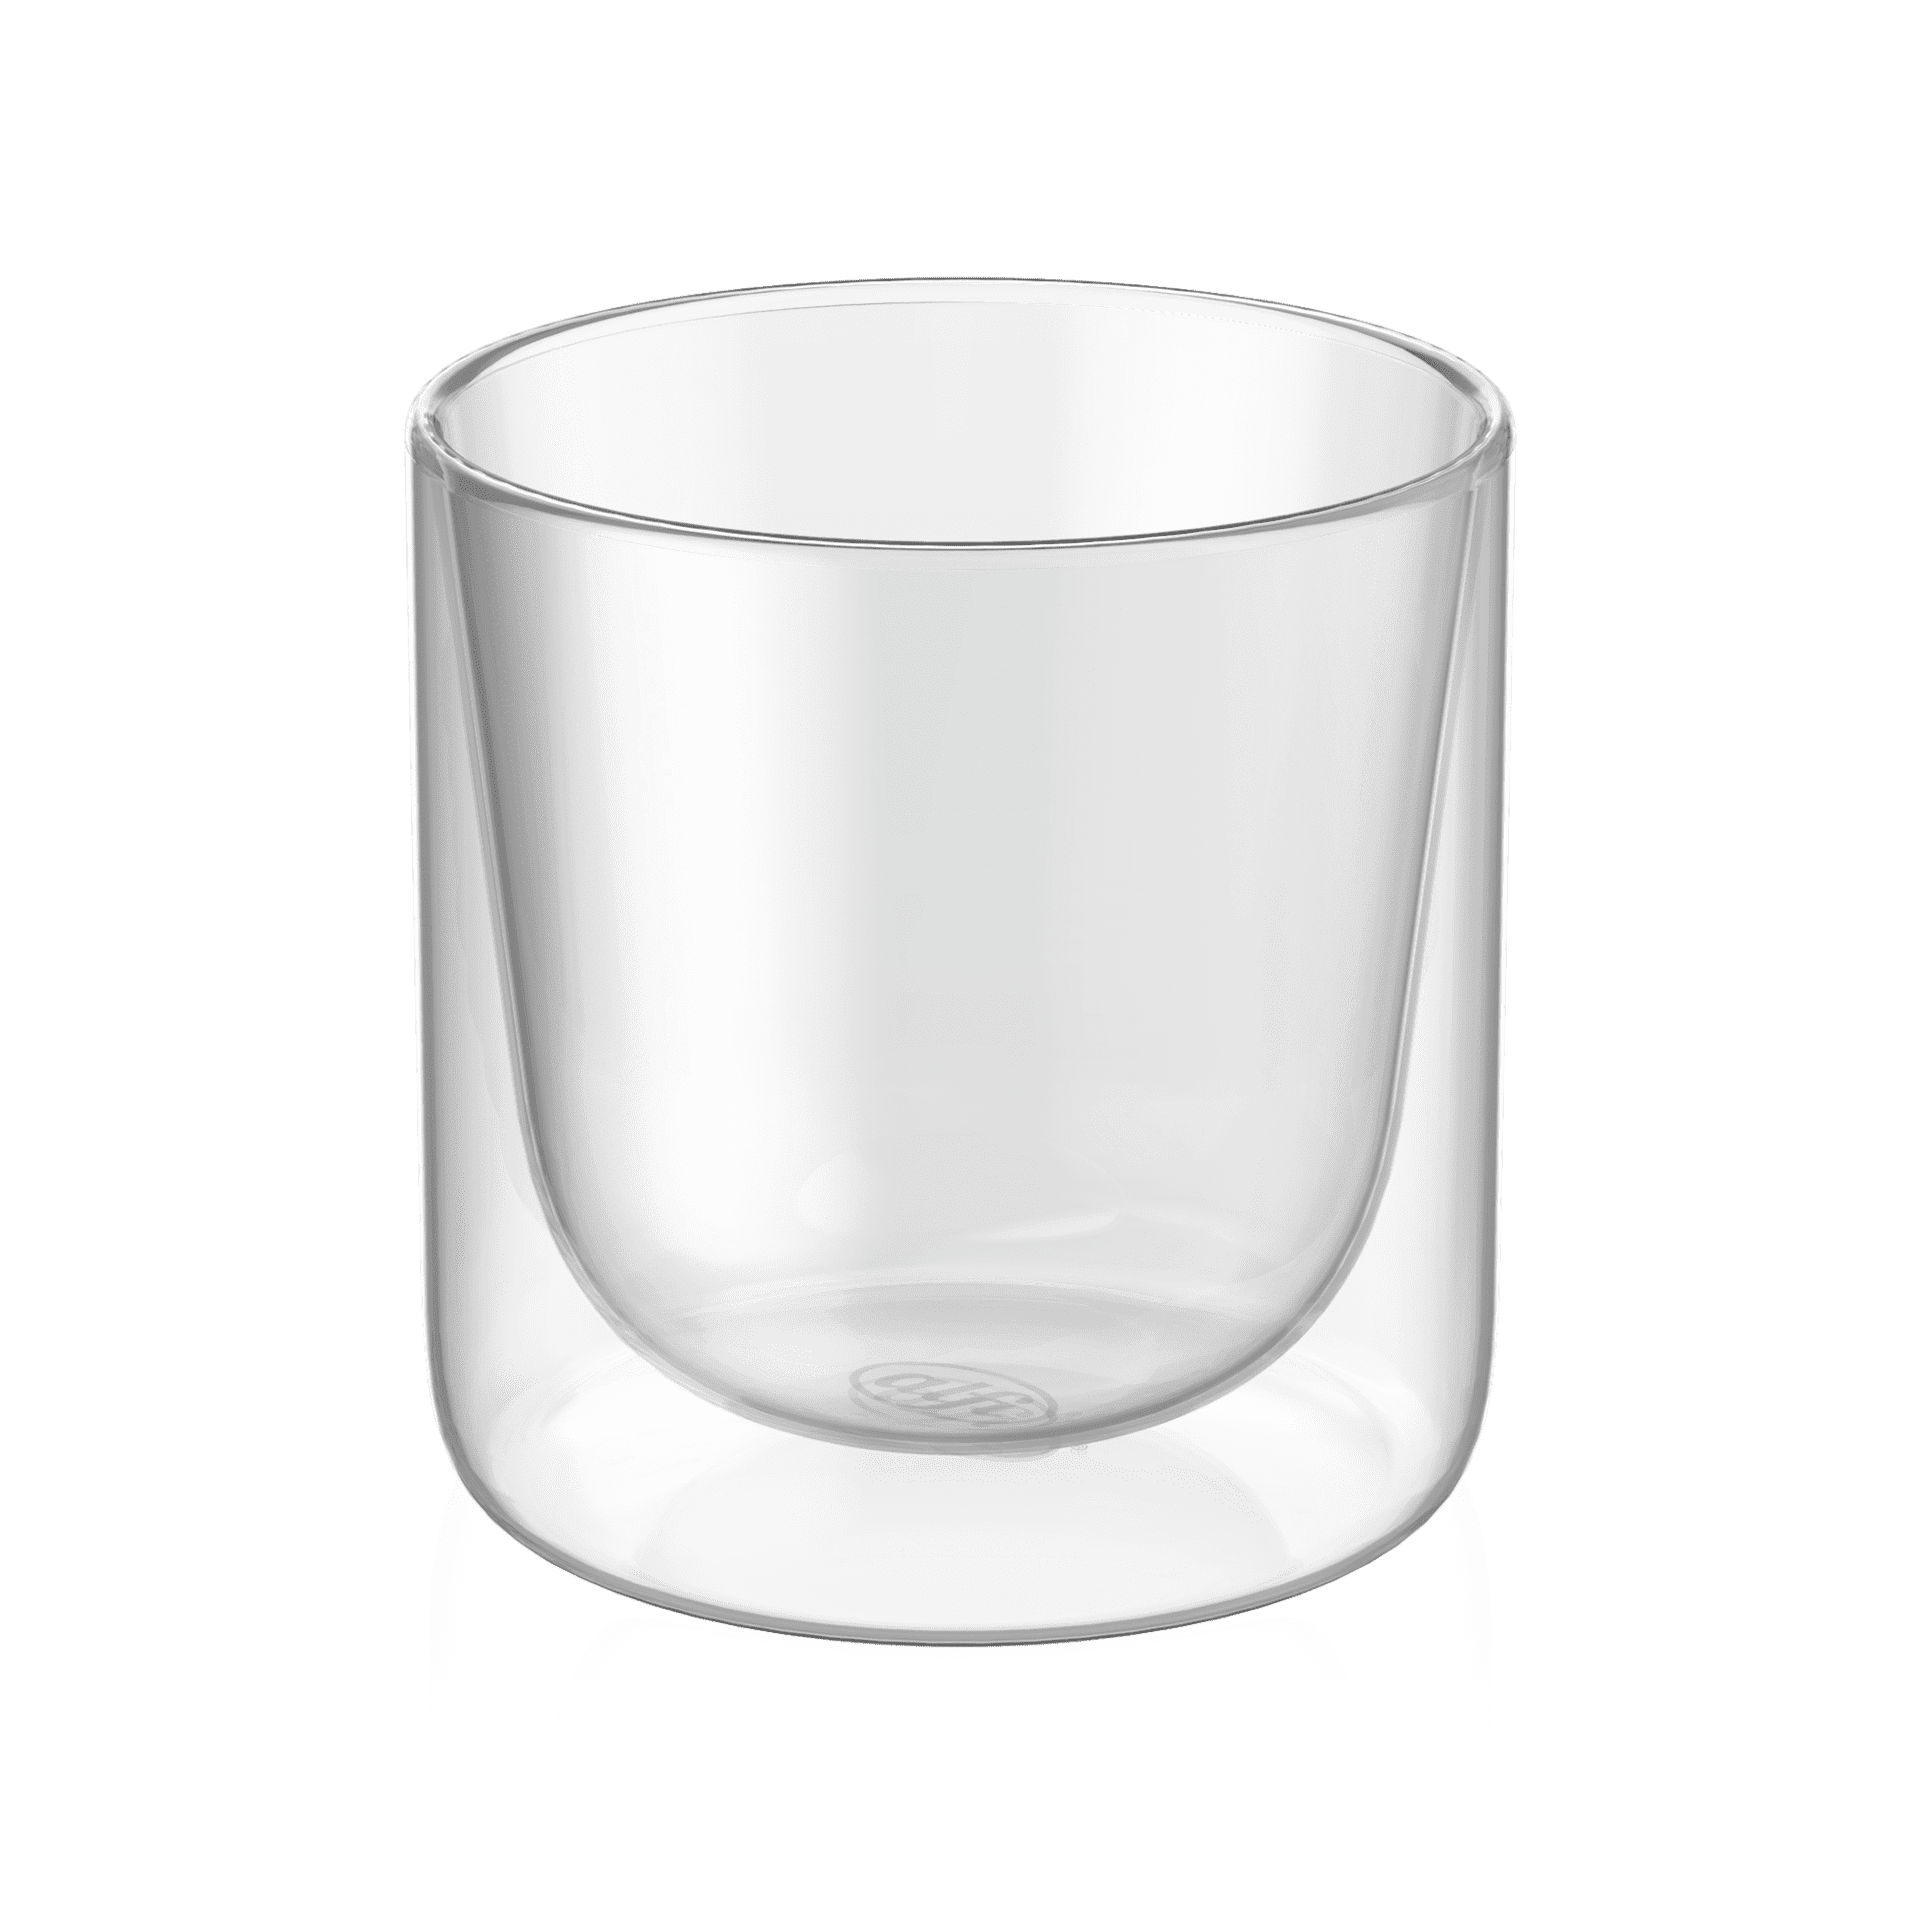 alfi Glas Motion Teeglas 2er Set 190 ml